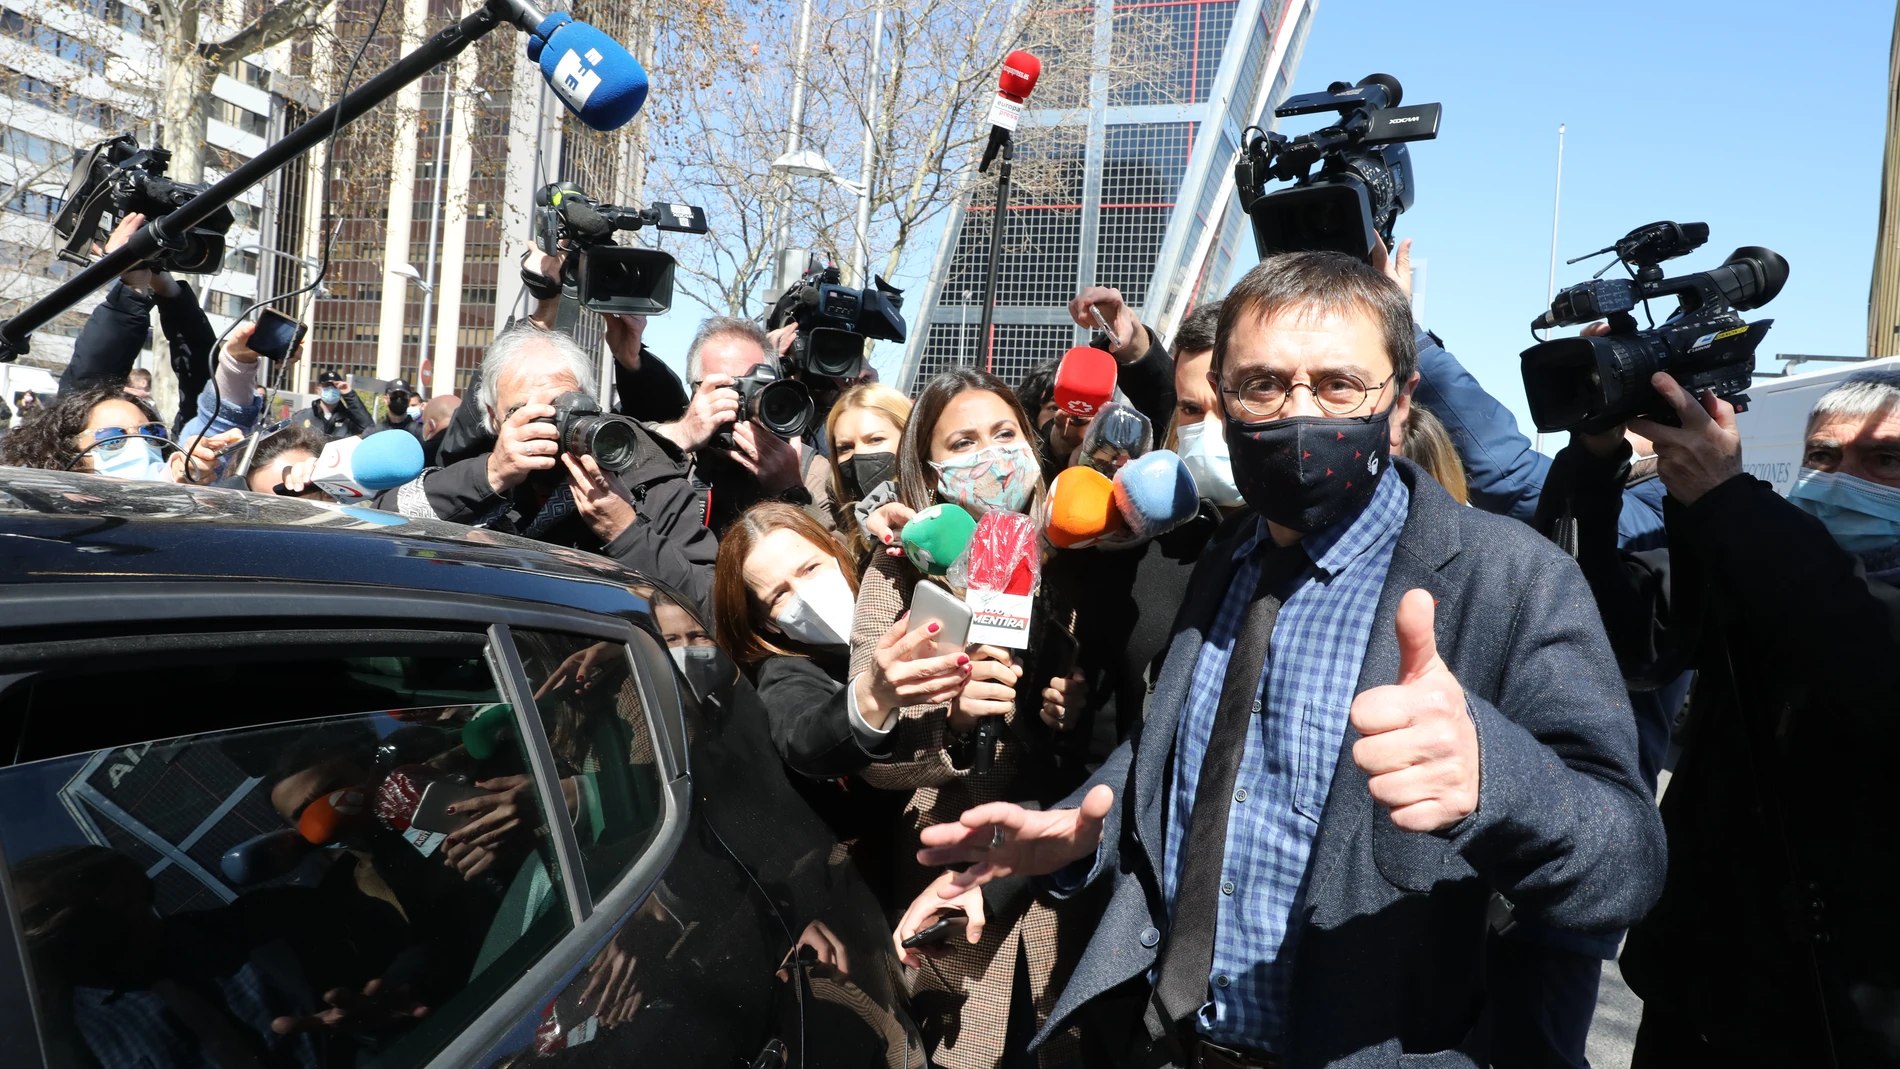 El cofundador de Podemos Juan Carlos Monedero, tras declarar ante el juez del "caso Neurona" el pasado 15 de marzo